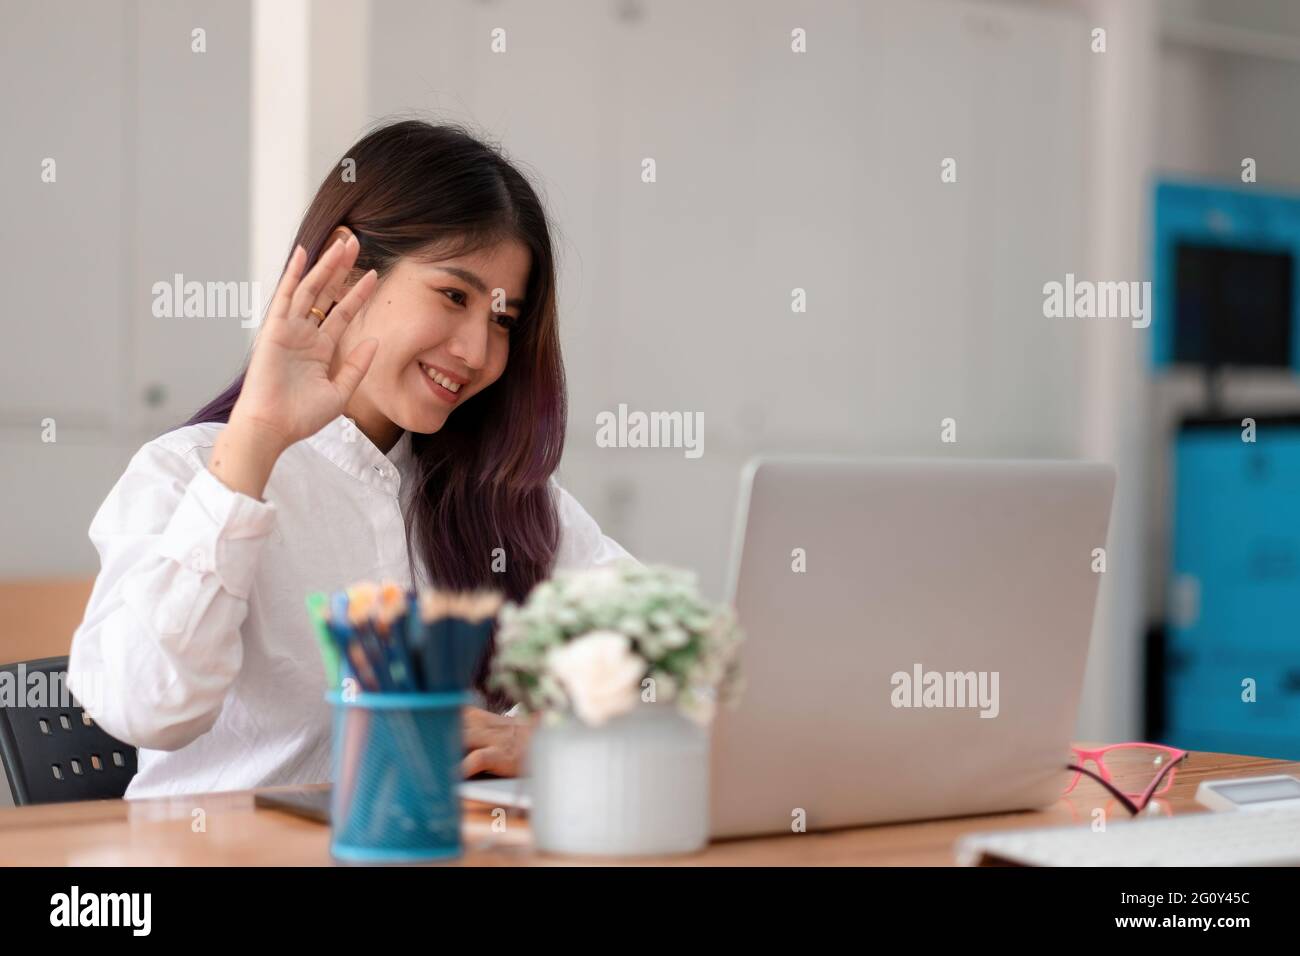 Bild einer glücklichen asiatischen Frau, die im weißen Hemd lächelt und die Hand am Laptop schwenkt, während sie im Büro spricht oder chattet Stockfoto